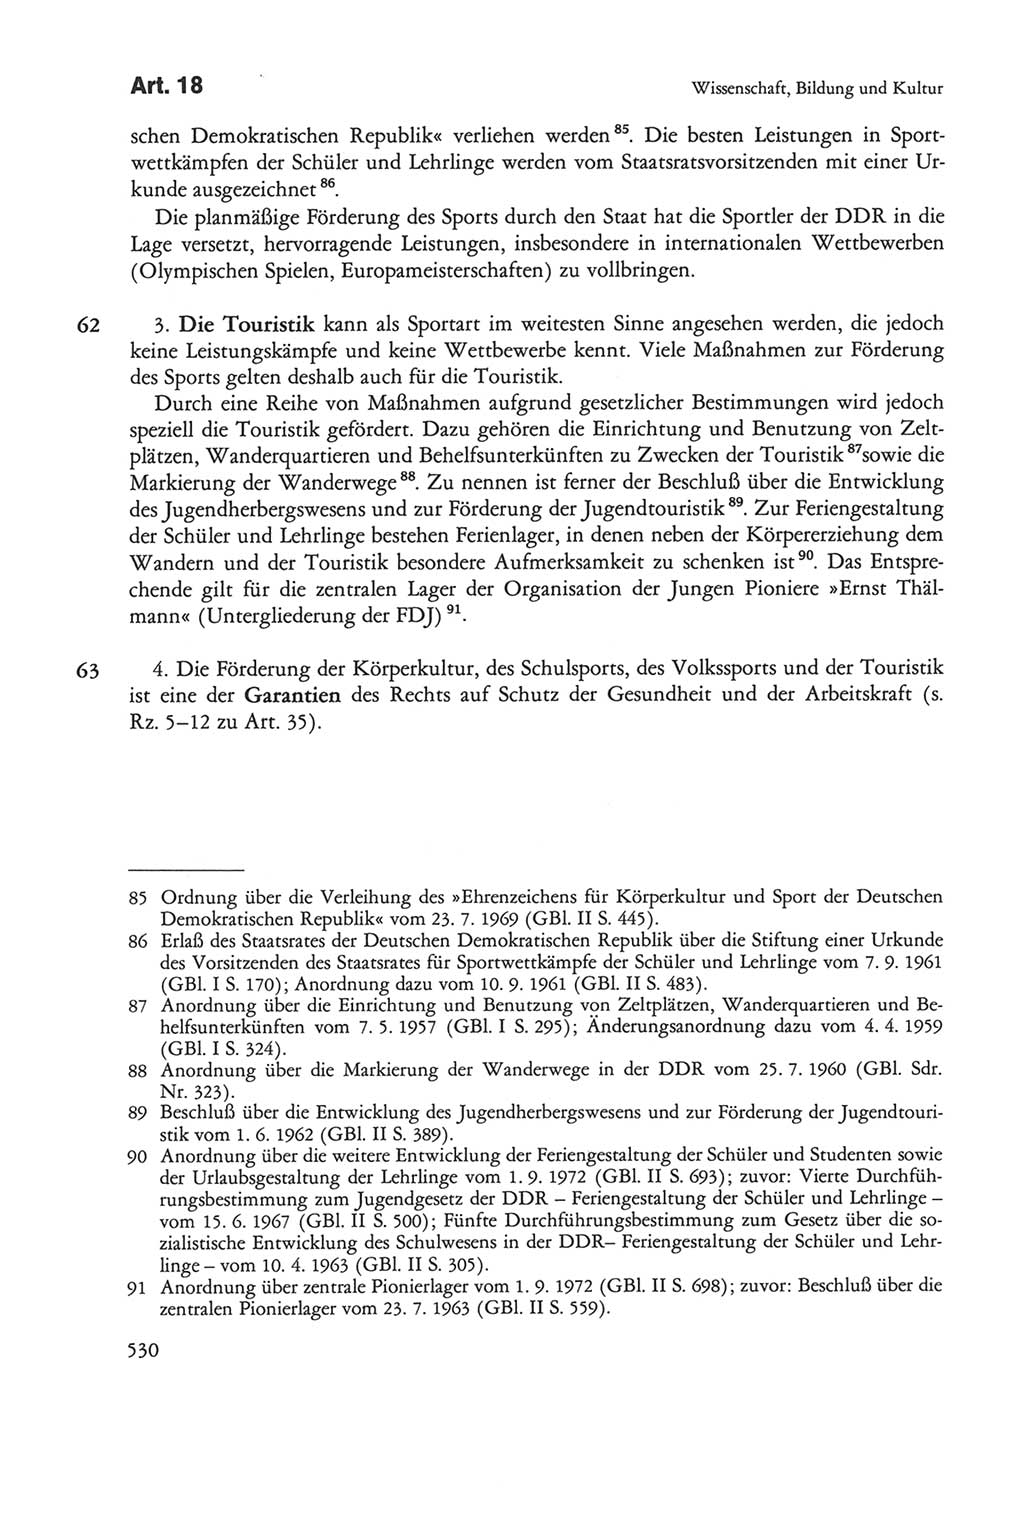 Die sozialistische Verfassung der Deutschen Demokratischen Republik (DDR), Kommentar mit einem Nachtrag 1997, Seite 530 (Soz. Verf. DDR Komm. Nachtr. 1997, S. 530)